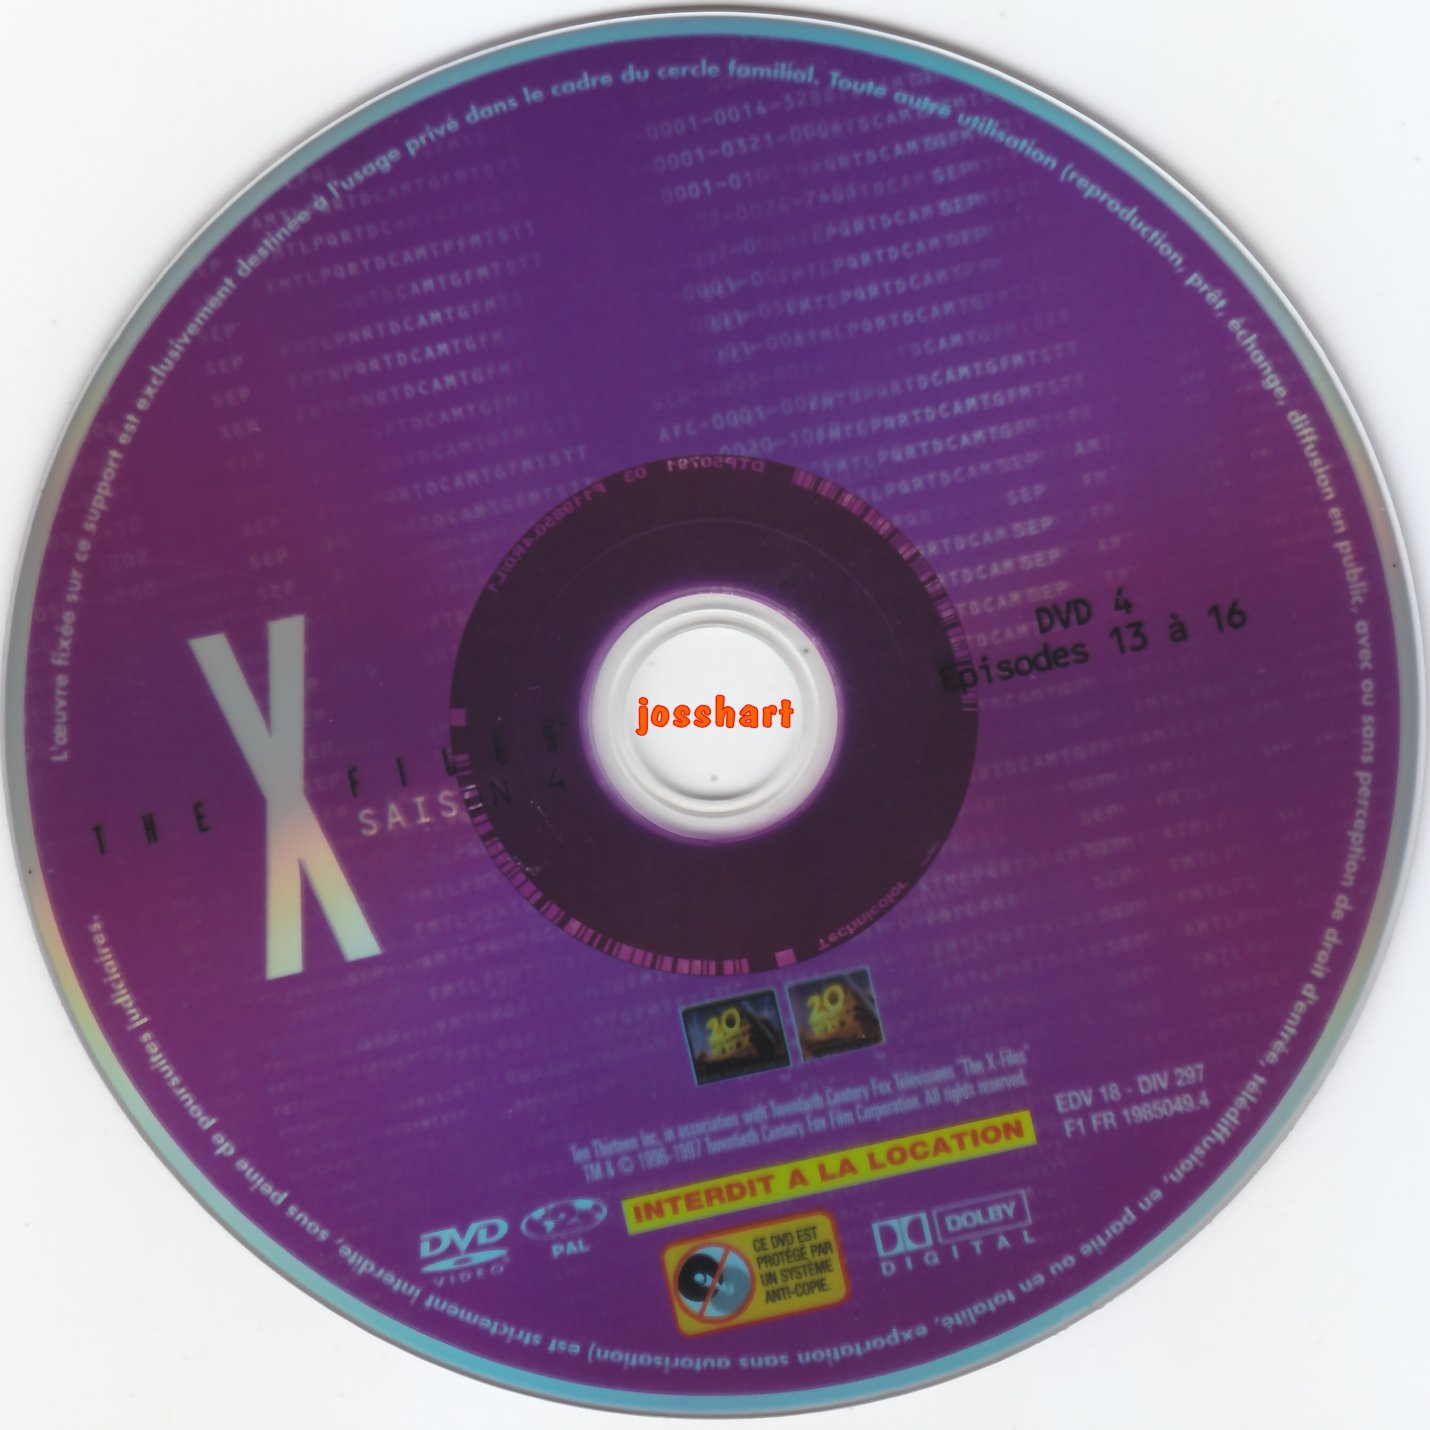 The X Files Saison 4 DVD 4 v2